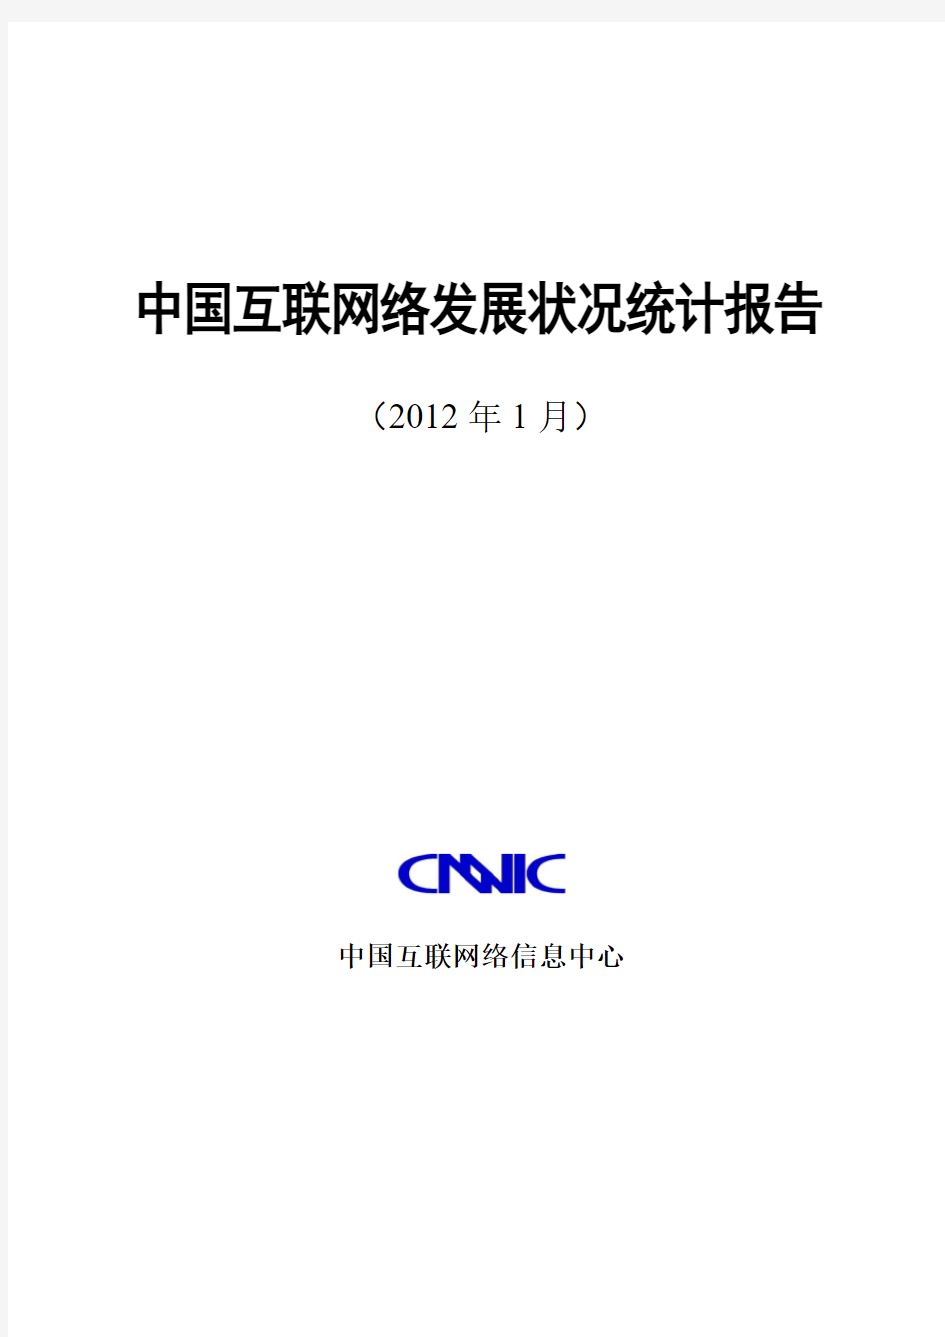 第29次中国互联网络发展状况统计报告